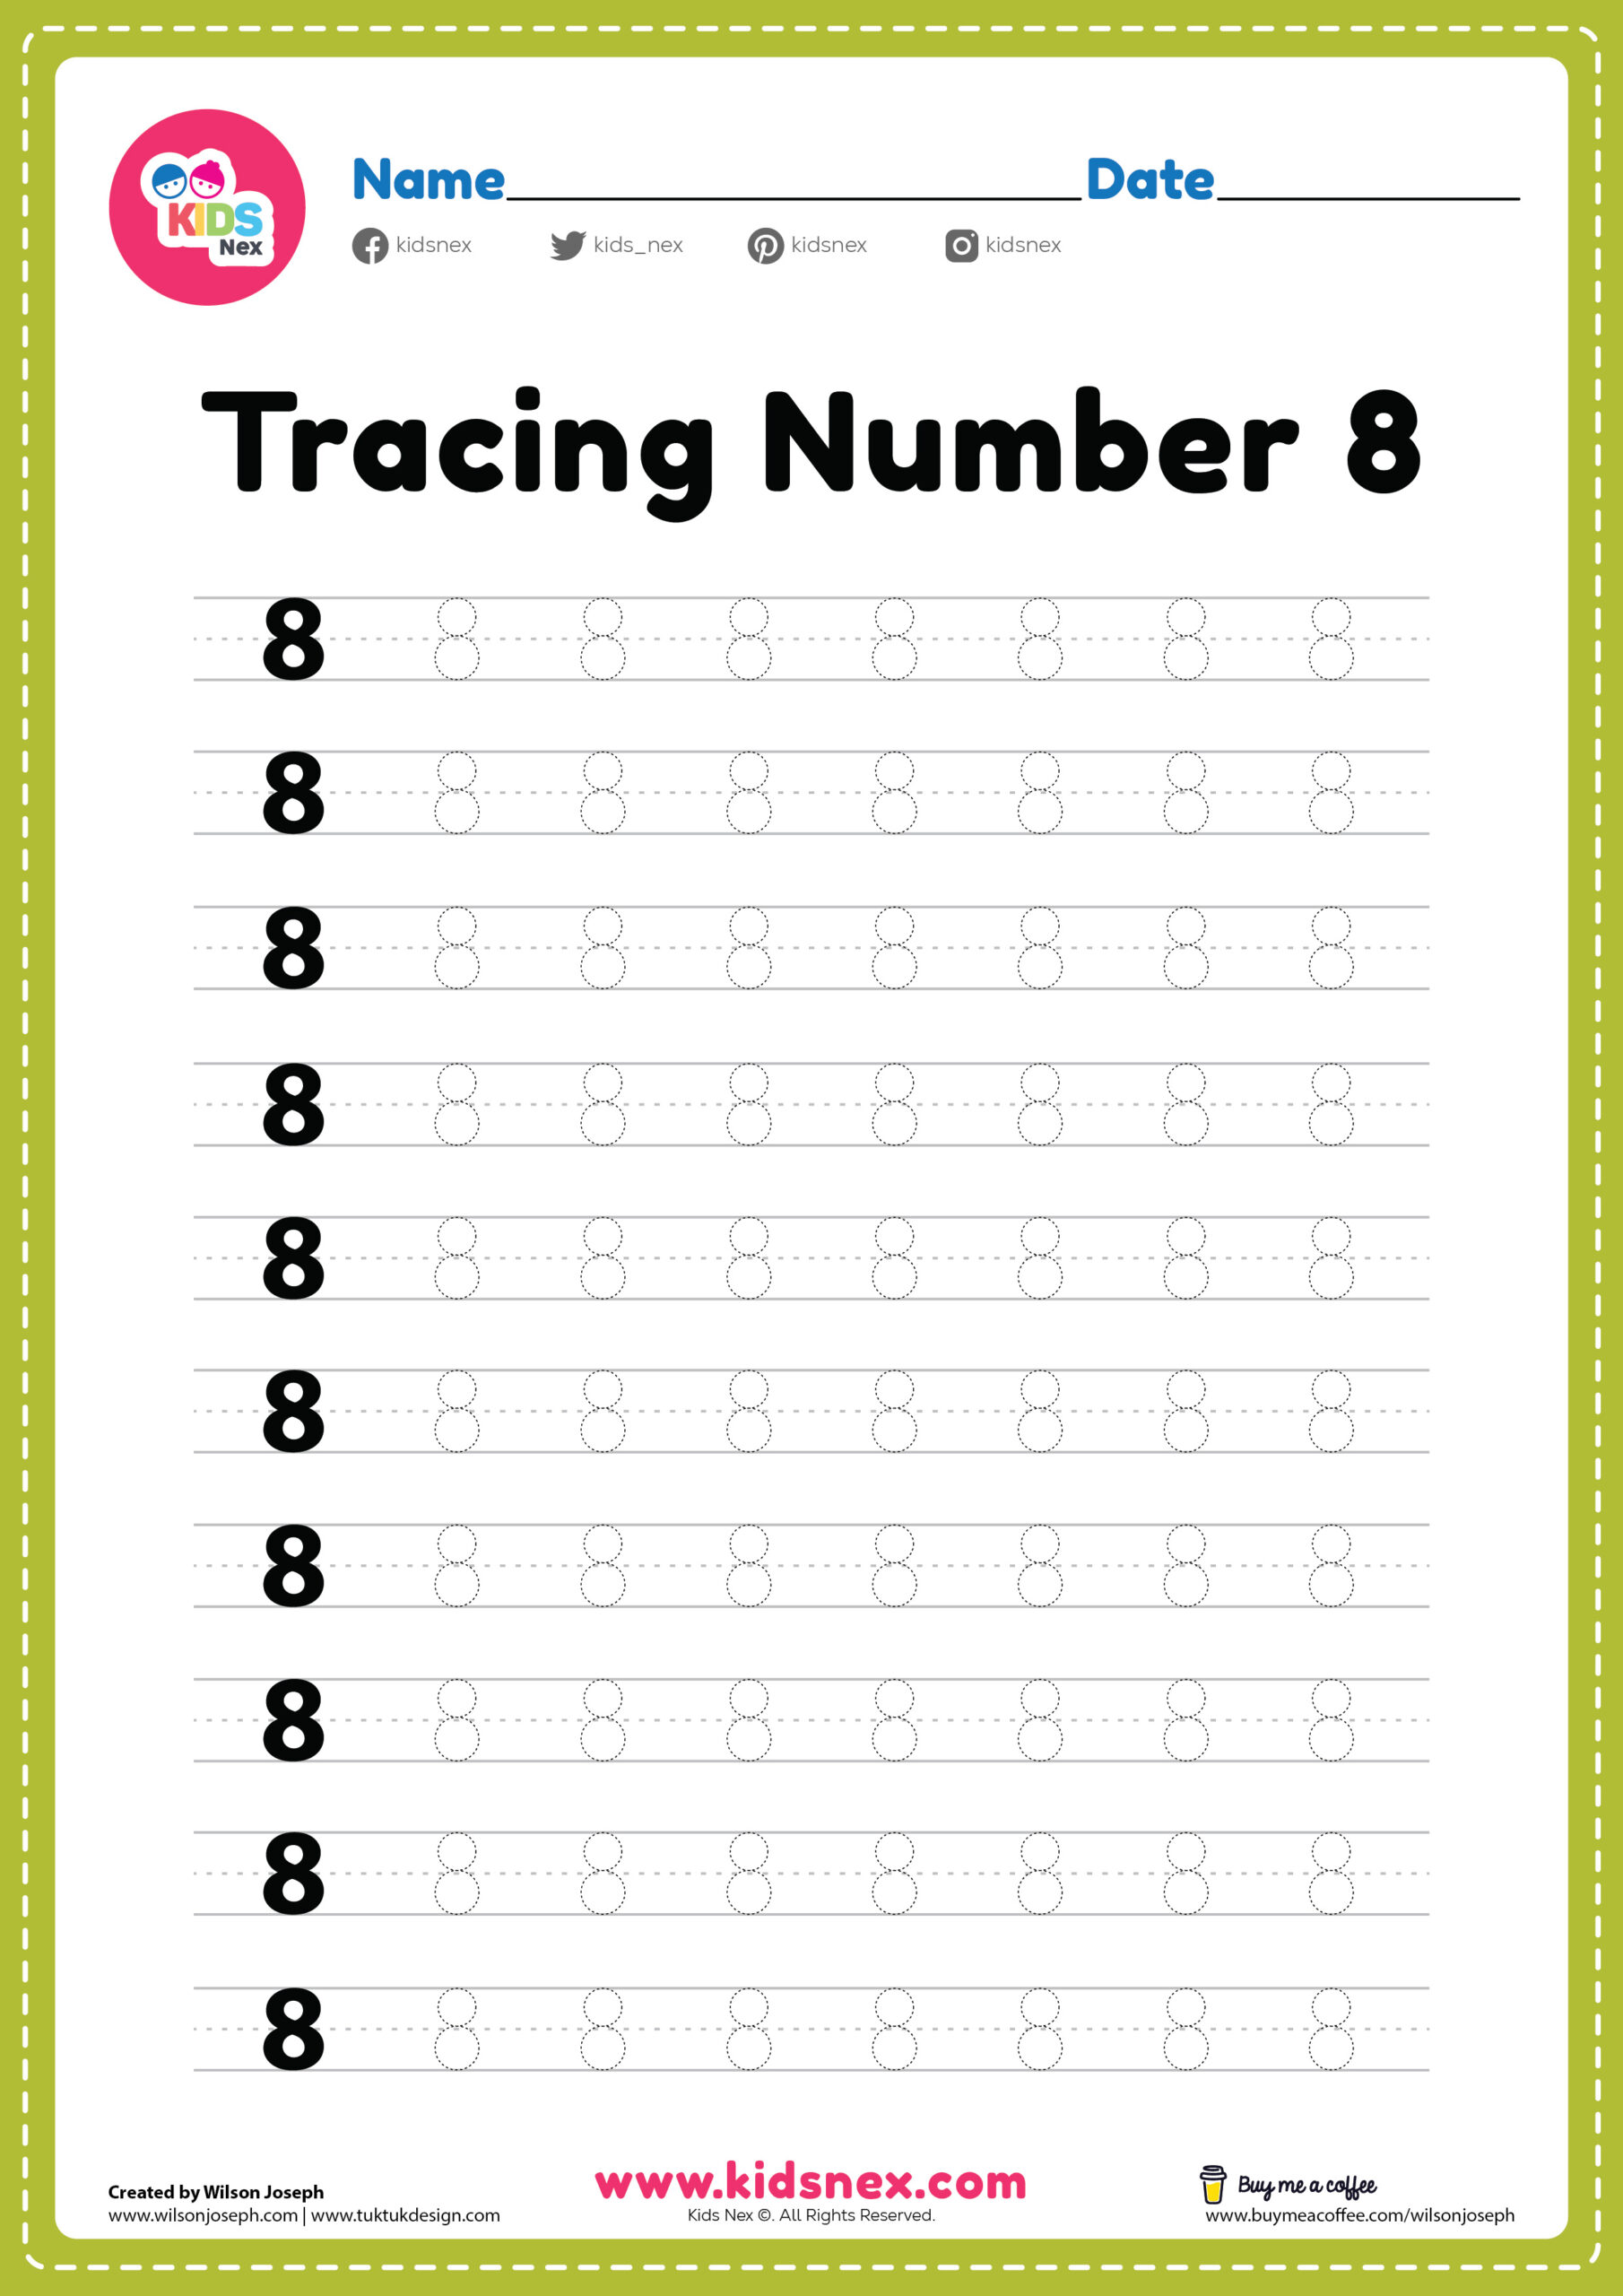 tracing-number-8-worksheet-free-printable-pdf-kindergarten